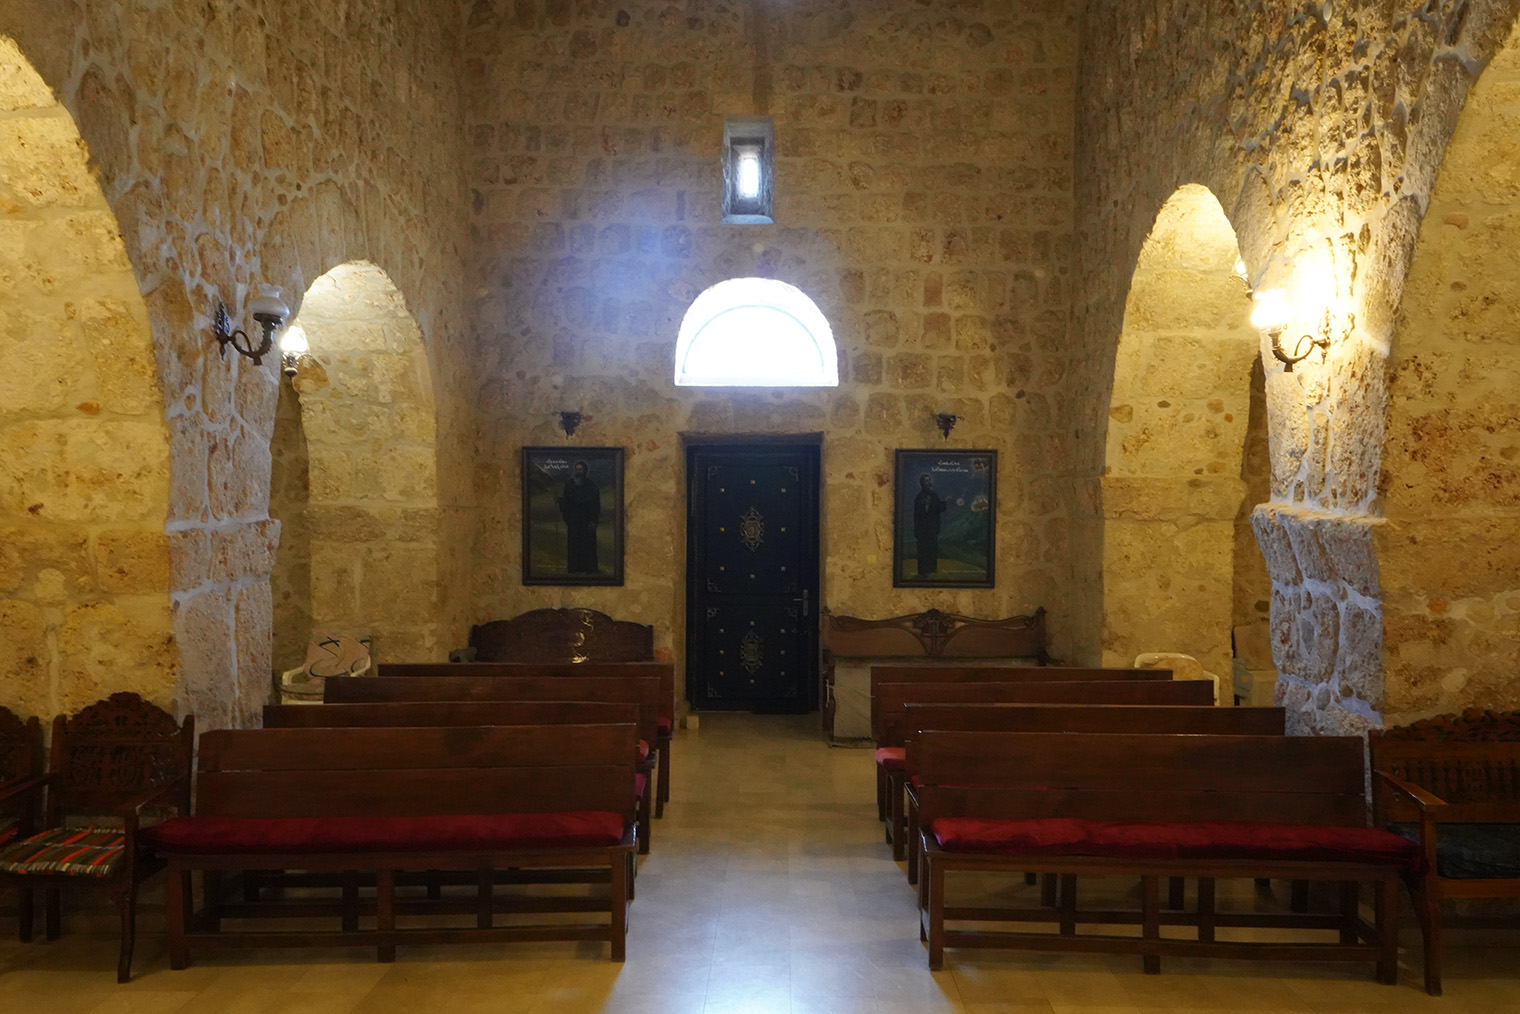 Спартанский интерьер монастырской церкви